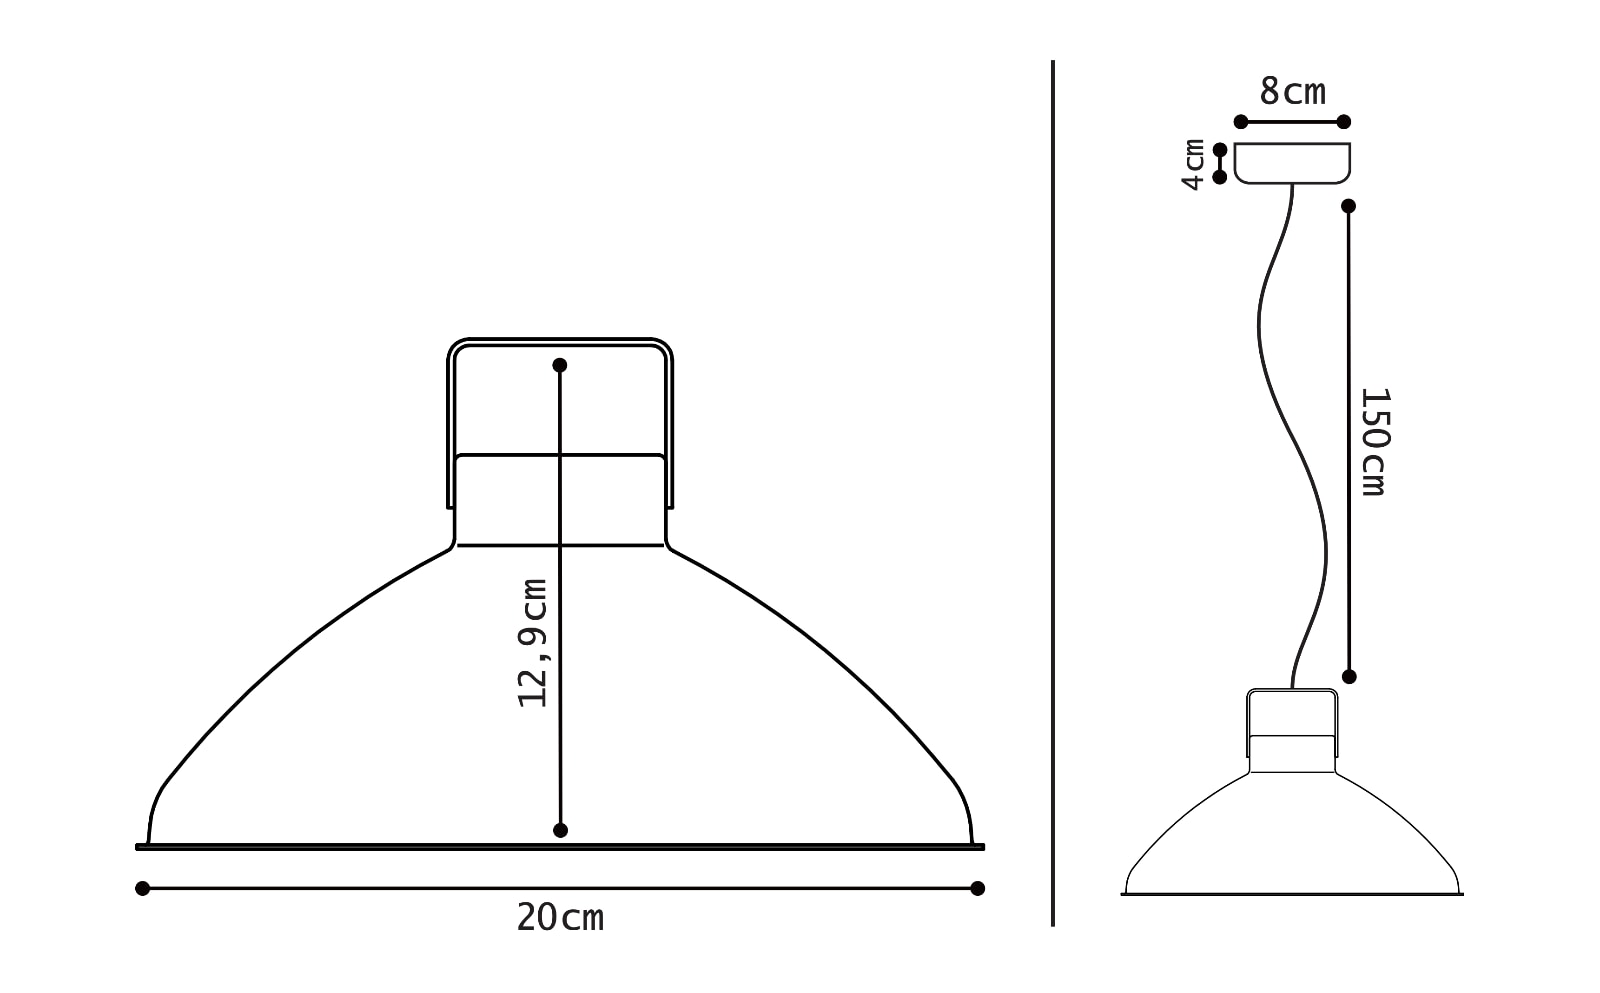 Industriestil-Pendellampen BEAUMONT in vielen Farben: Maßzeichnung des kleinen Modells B200